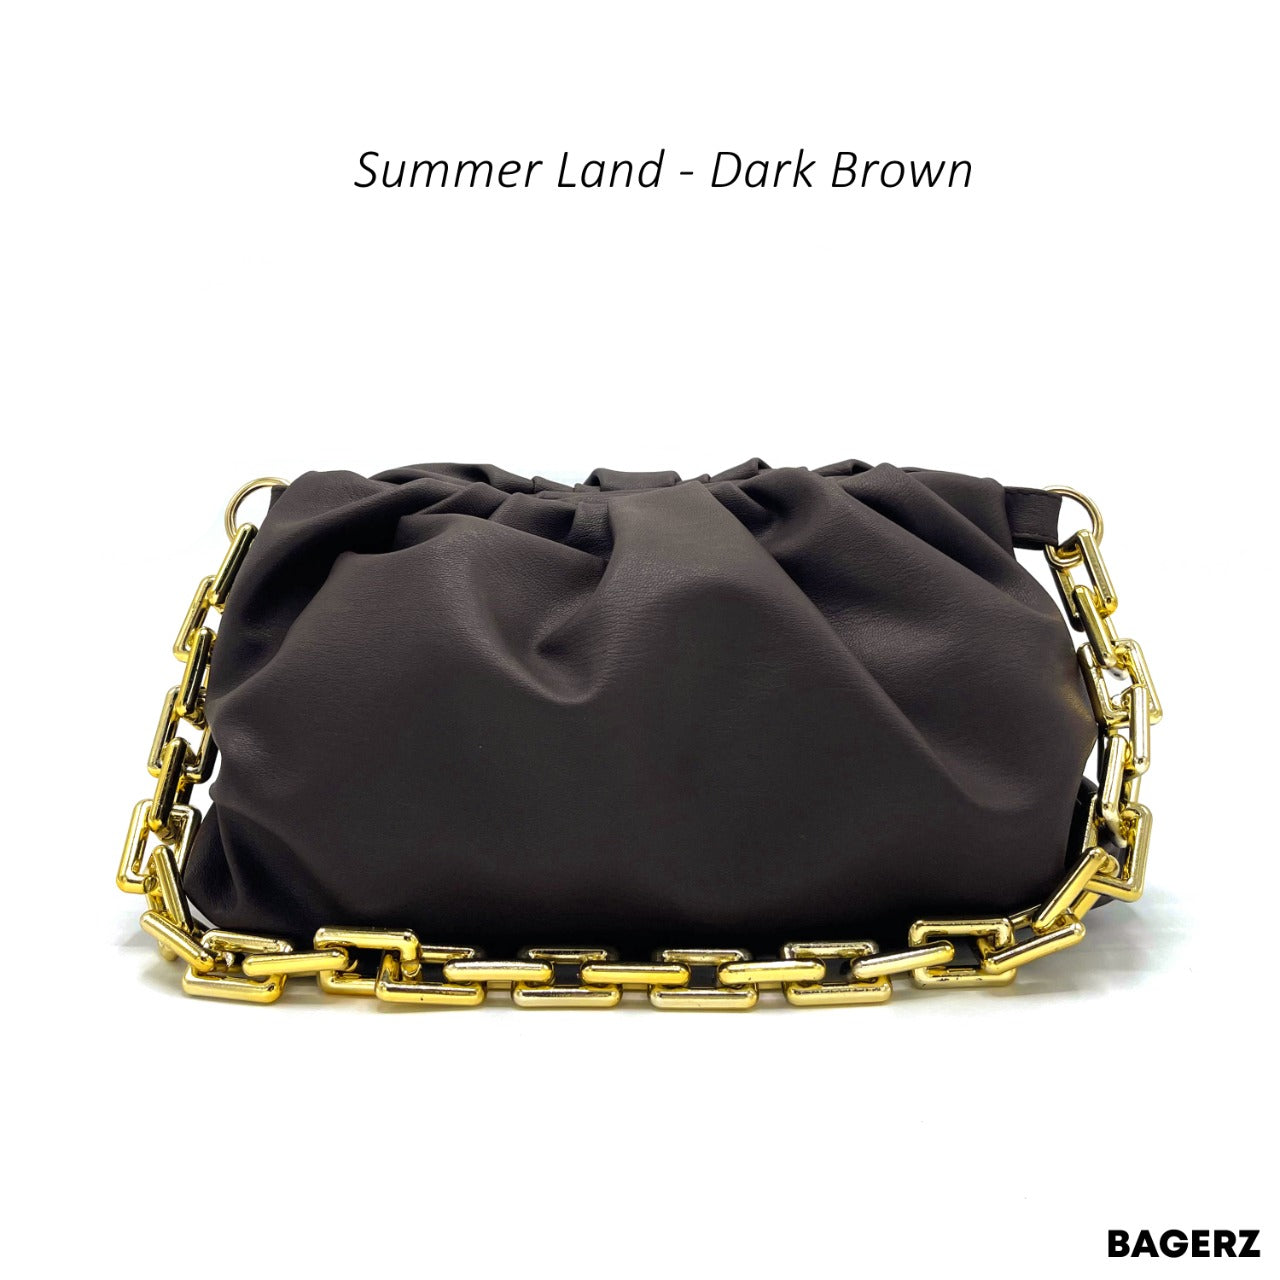 Summer Land - Dark Brown